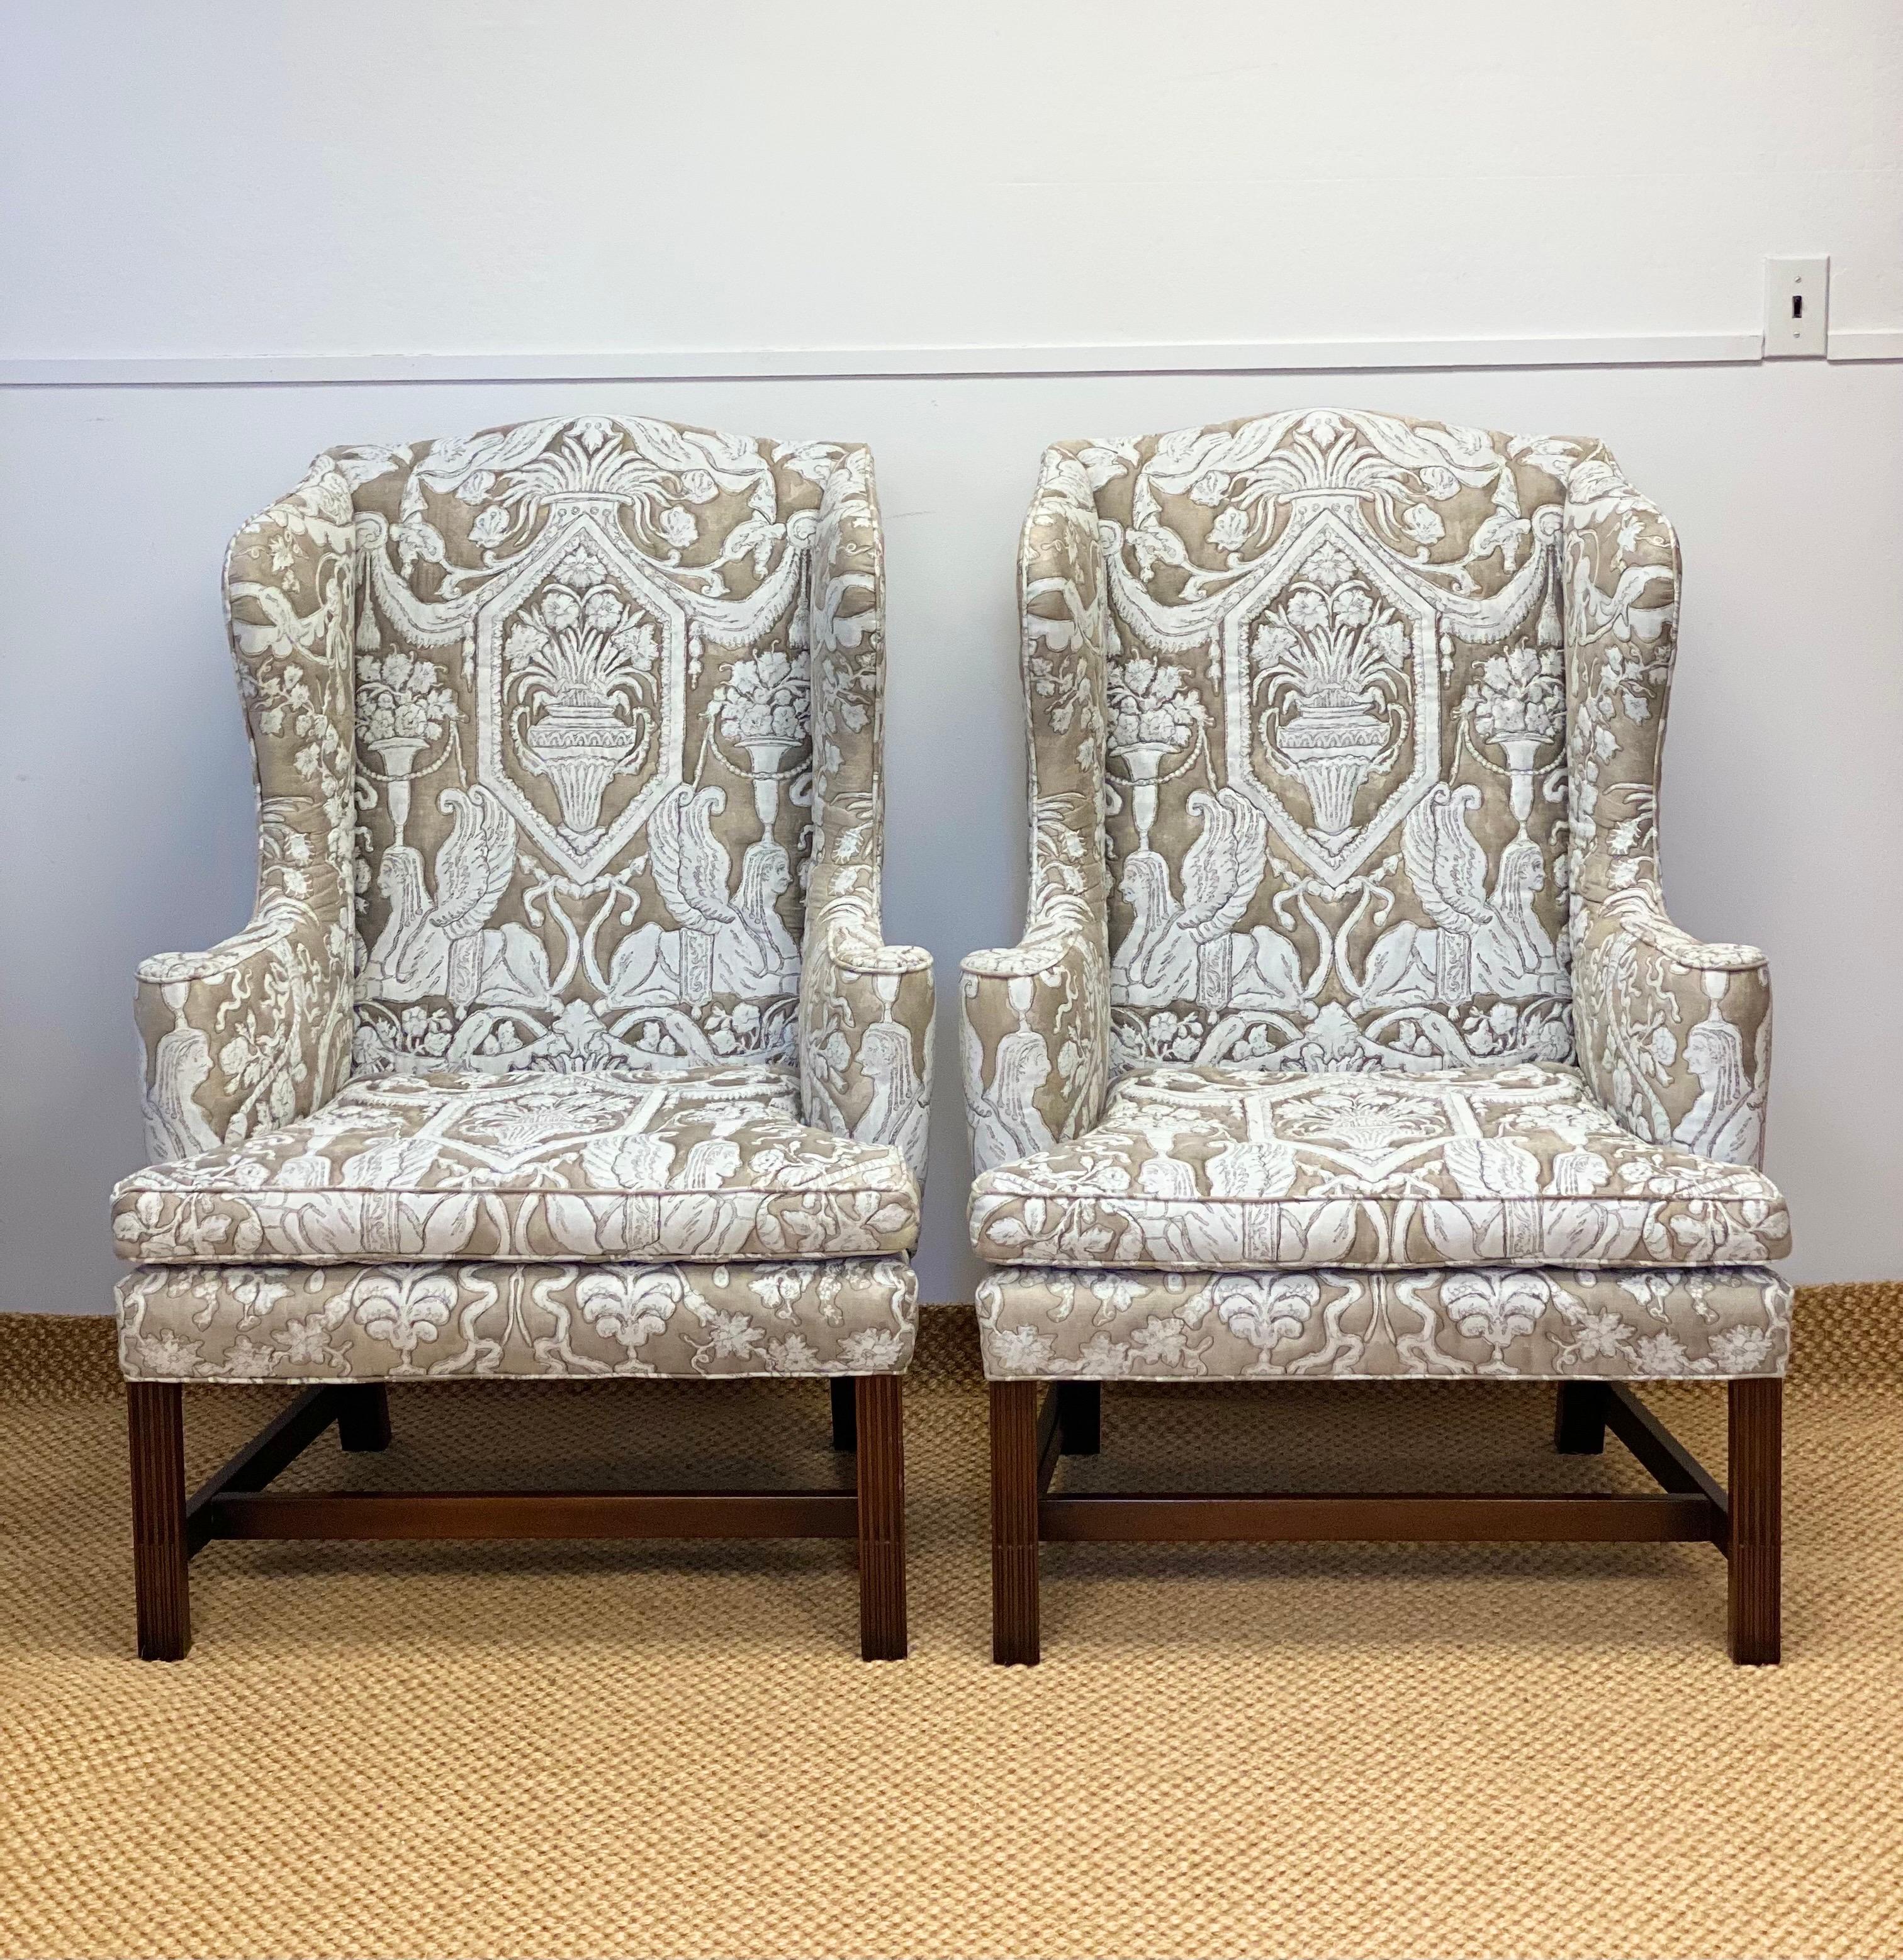 Nous avons le plaisir de vous proposer une superbe paire de chaises à dossier ailé, par Kittinger, vers les années 1960. Fondée en 1866, la société Kittinger est un fabricant américain de meubles de reproduction coloniale traditionnelle, reconnu